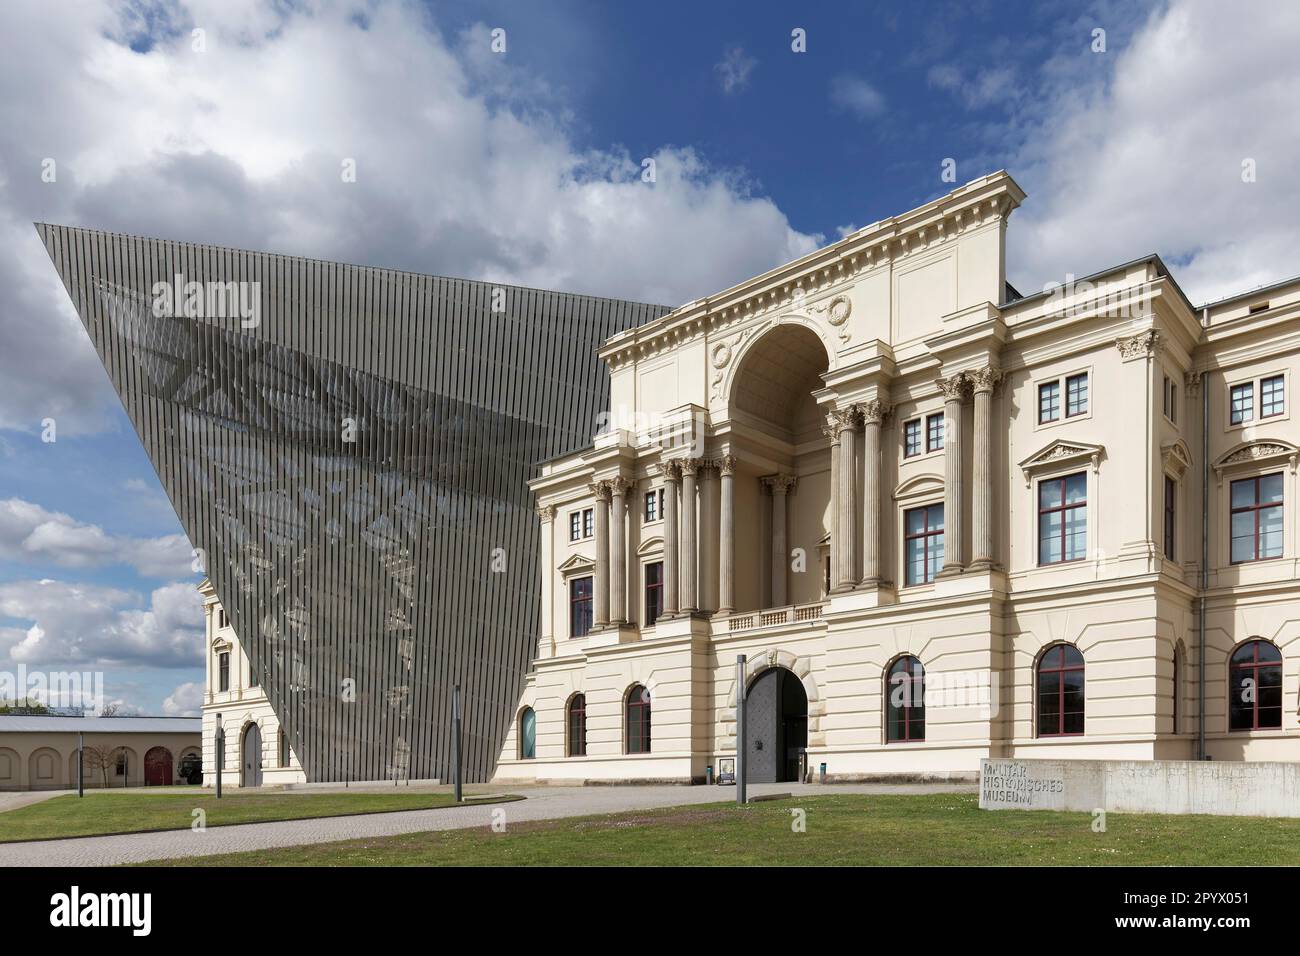 Musée d'histoire militaire des forces armées allemandes, architecte Daniel Libeskind, Dresde, Saxe, Allemagne Banque D'Images